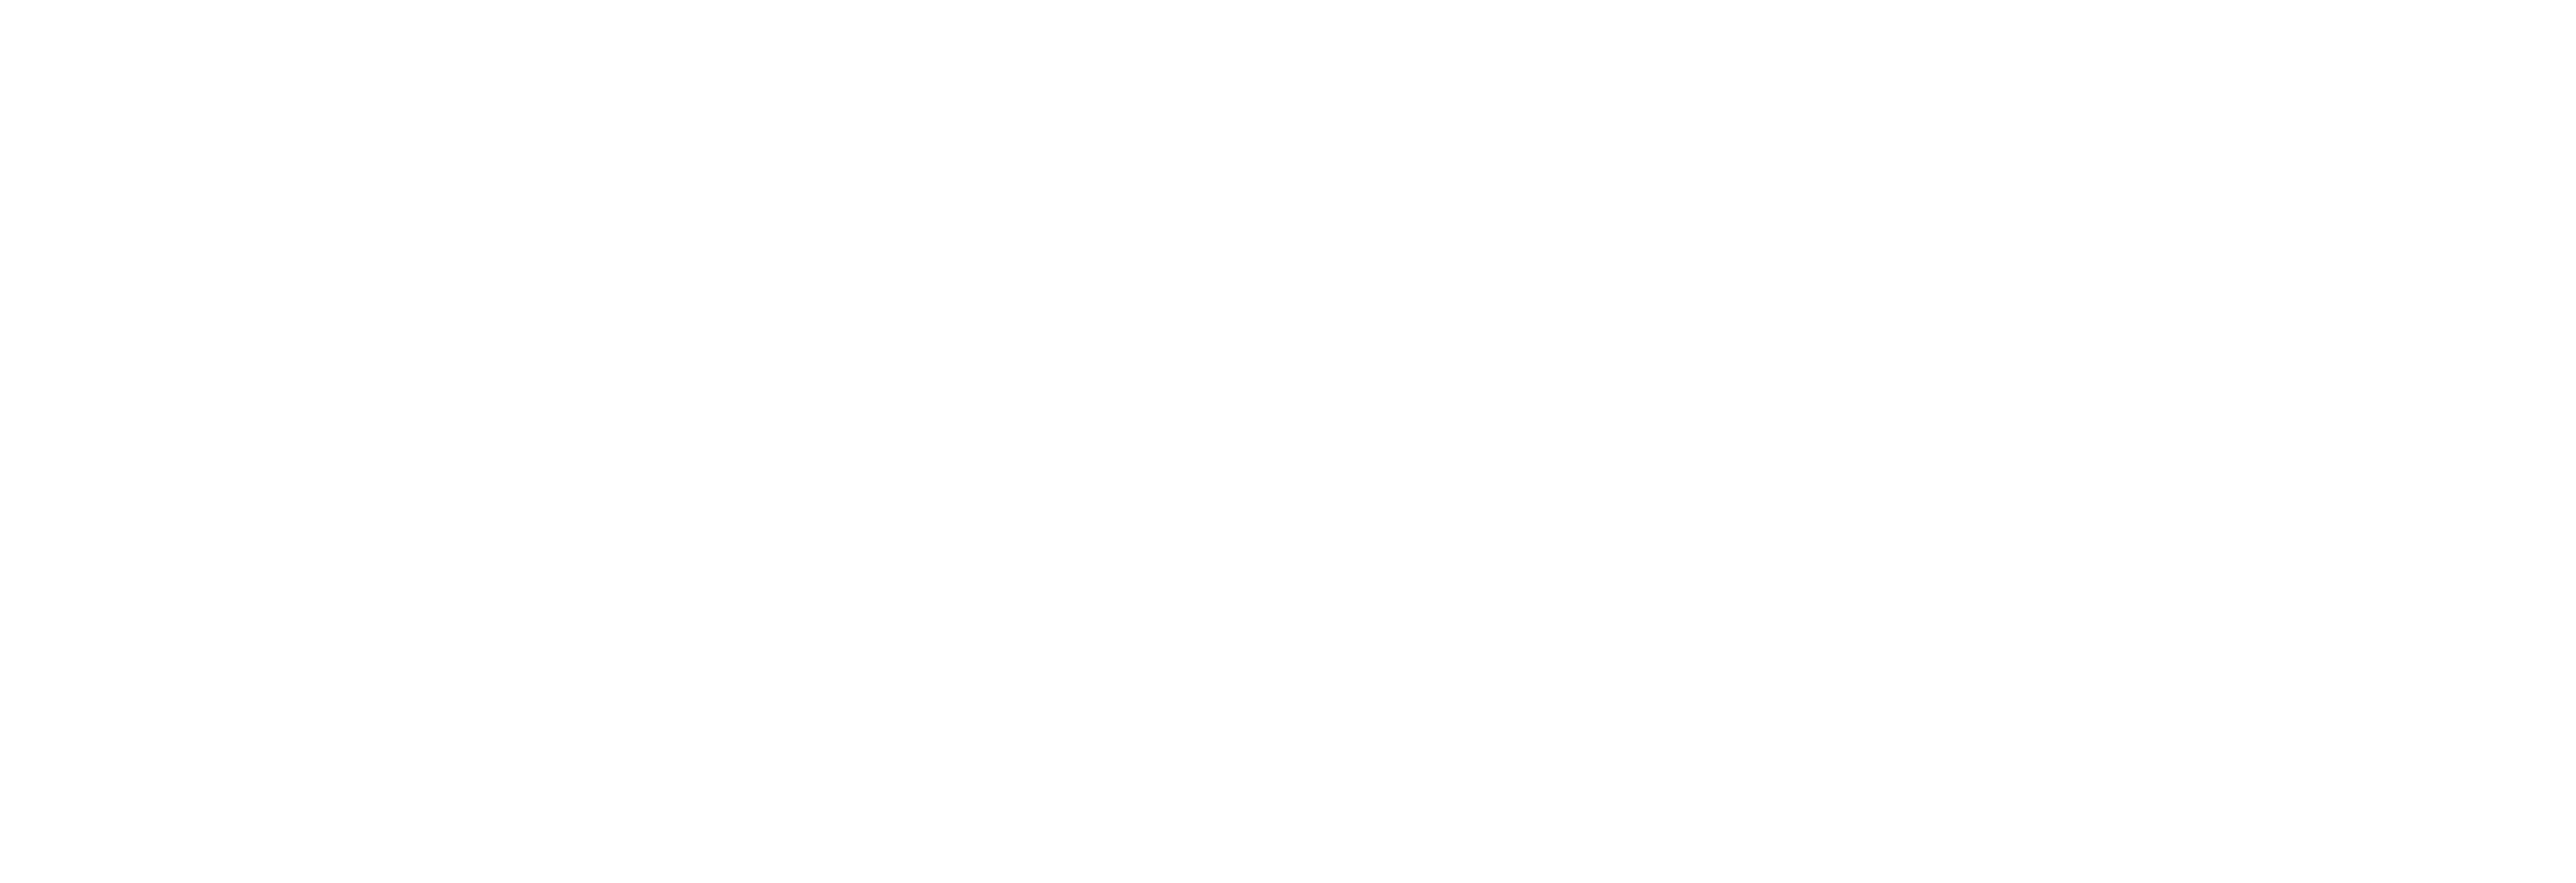 The Music Shop - SAINT-BRIEUC Côtes d'Armor (22) - Logo officiel